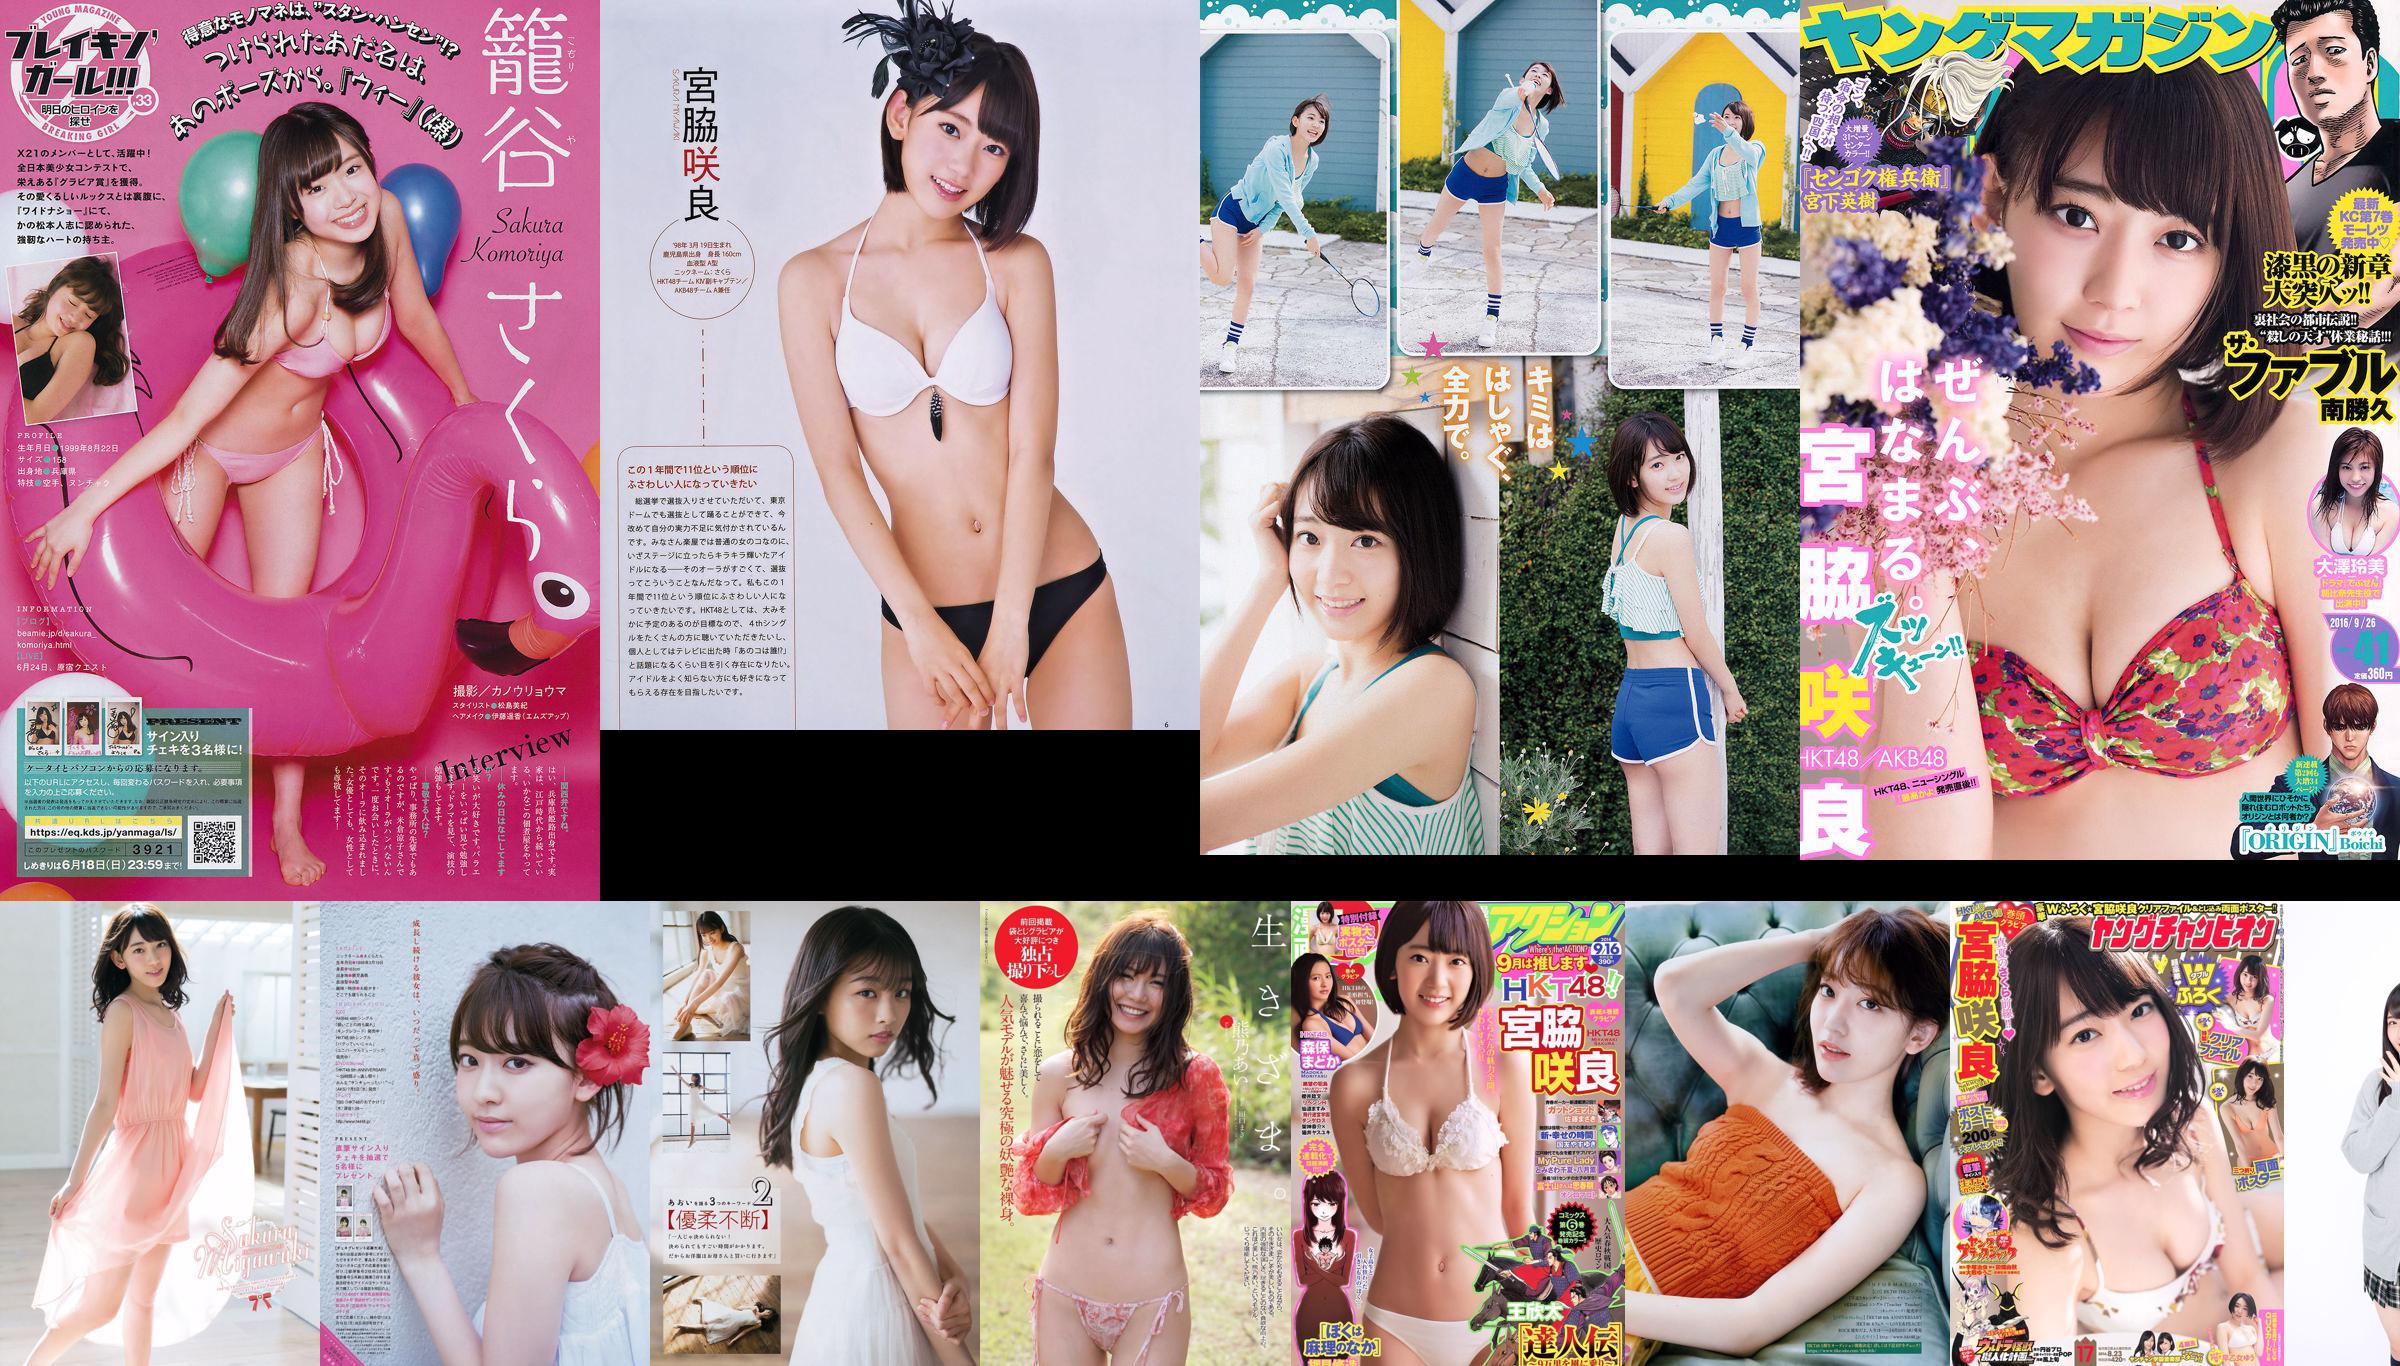 [Bomb Magazine] 2014 No.10 Sakura Miyawaki Haruka Kodama Madoka Moriyasu Natsumi Matsuoka Photograph No.db5168 Page 6